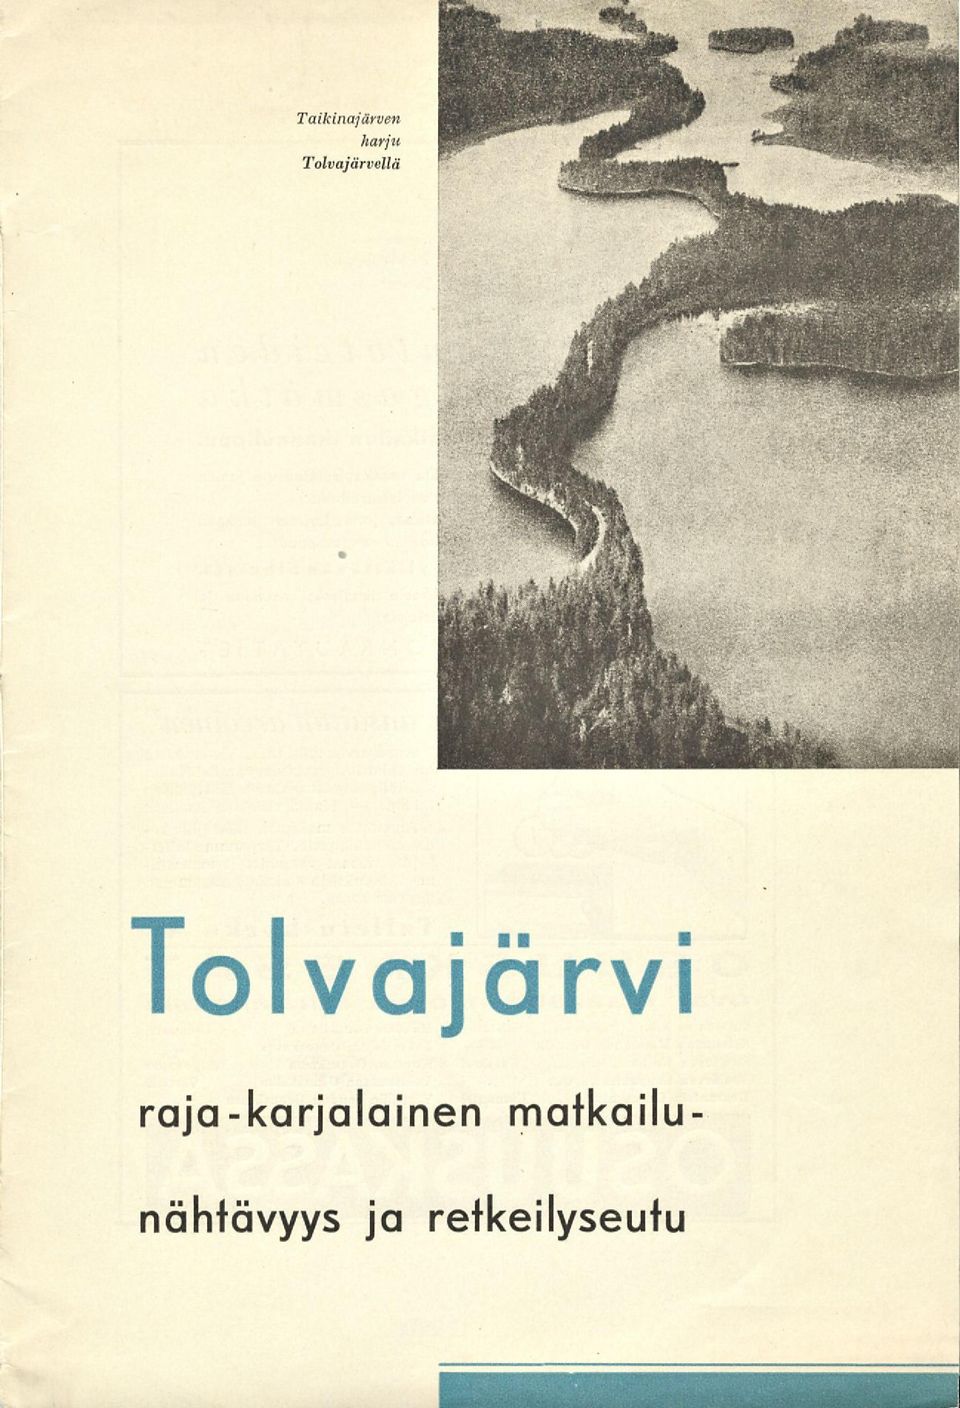 Tolvajärvi